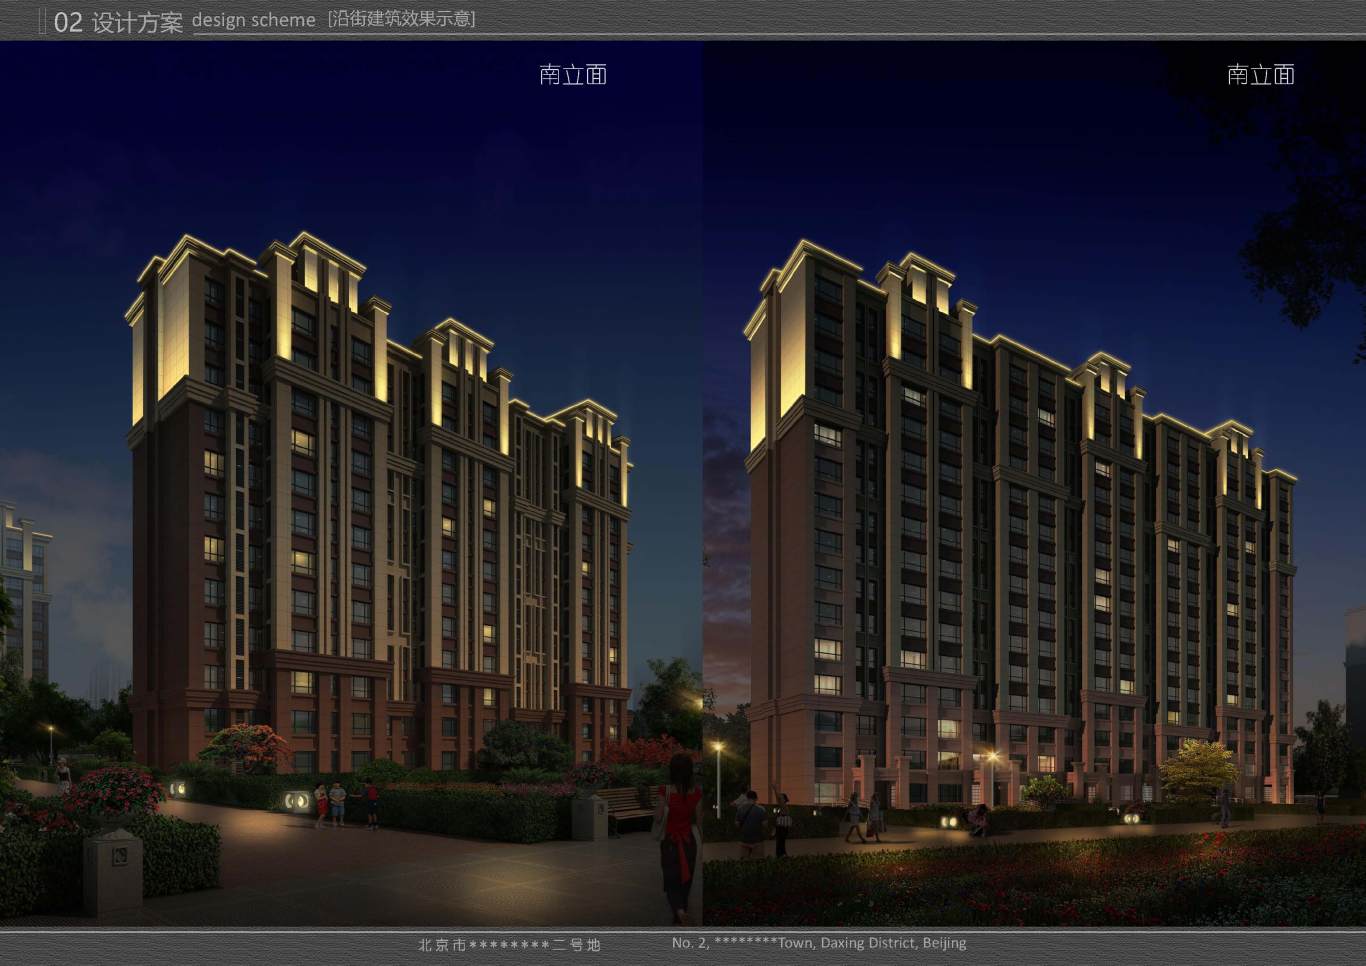 北京市大兴区*****二号地夜景照明项目案例图18